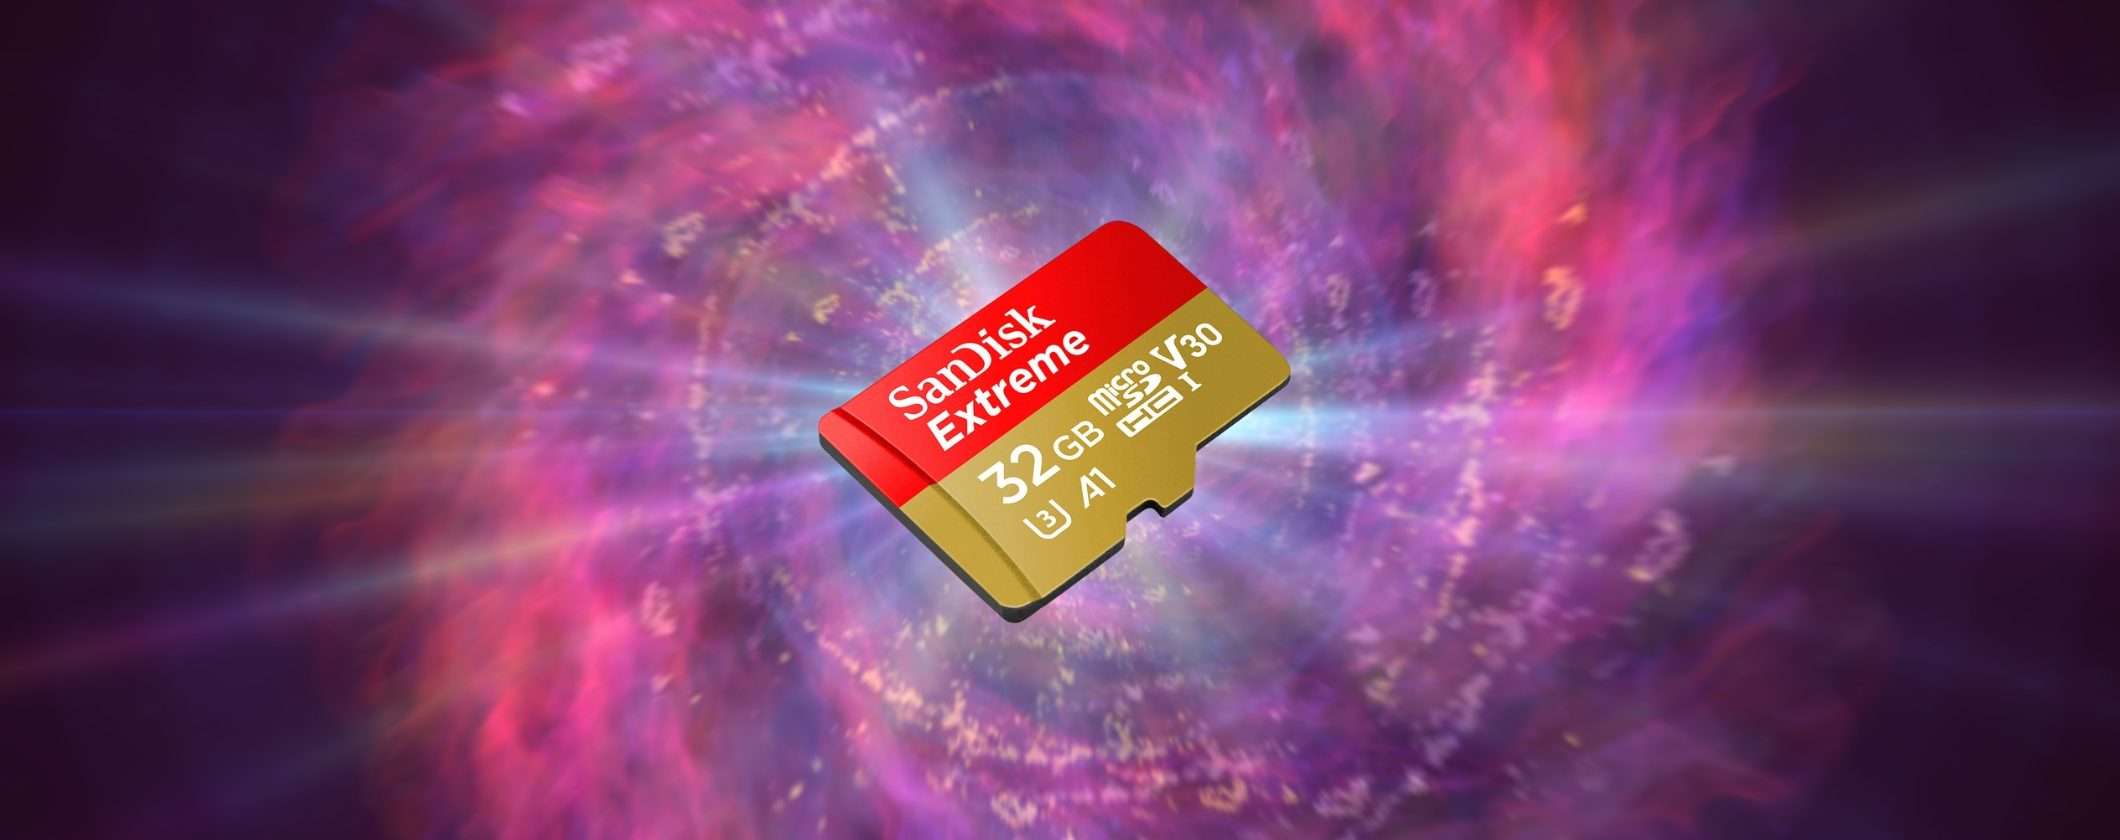 MicroSD SanDisk: potenza e velocità a soli 12€